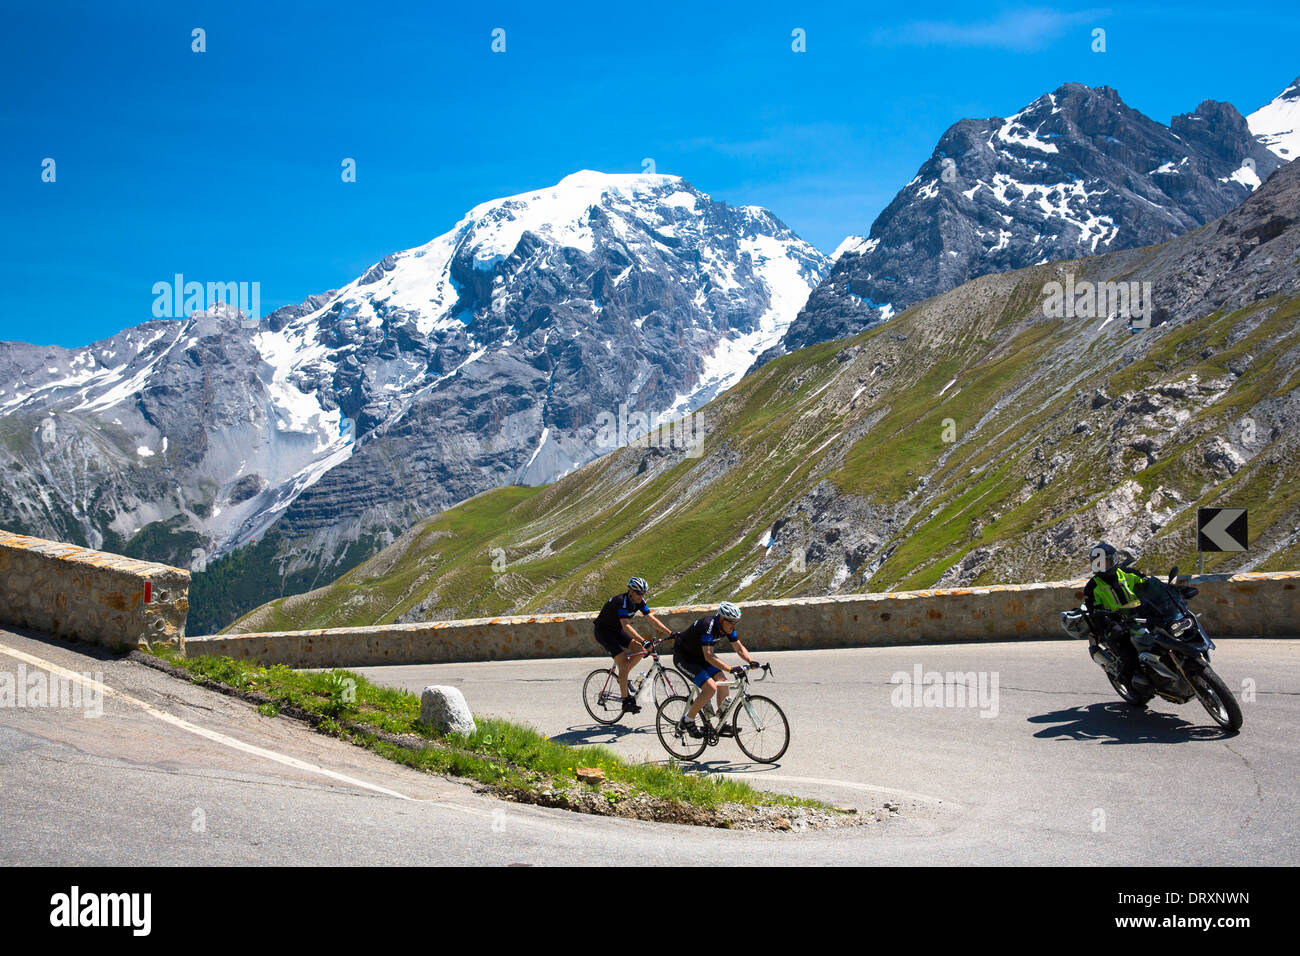 Los ciclistas ride roadbikes detrás de motocicleta cuesta arriba en el Stelvio Pass, Passo dello Stelvio, Stilfser Joch, en los Alpes, Italia Foto de stock